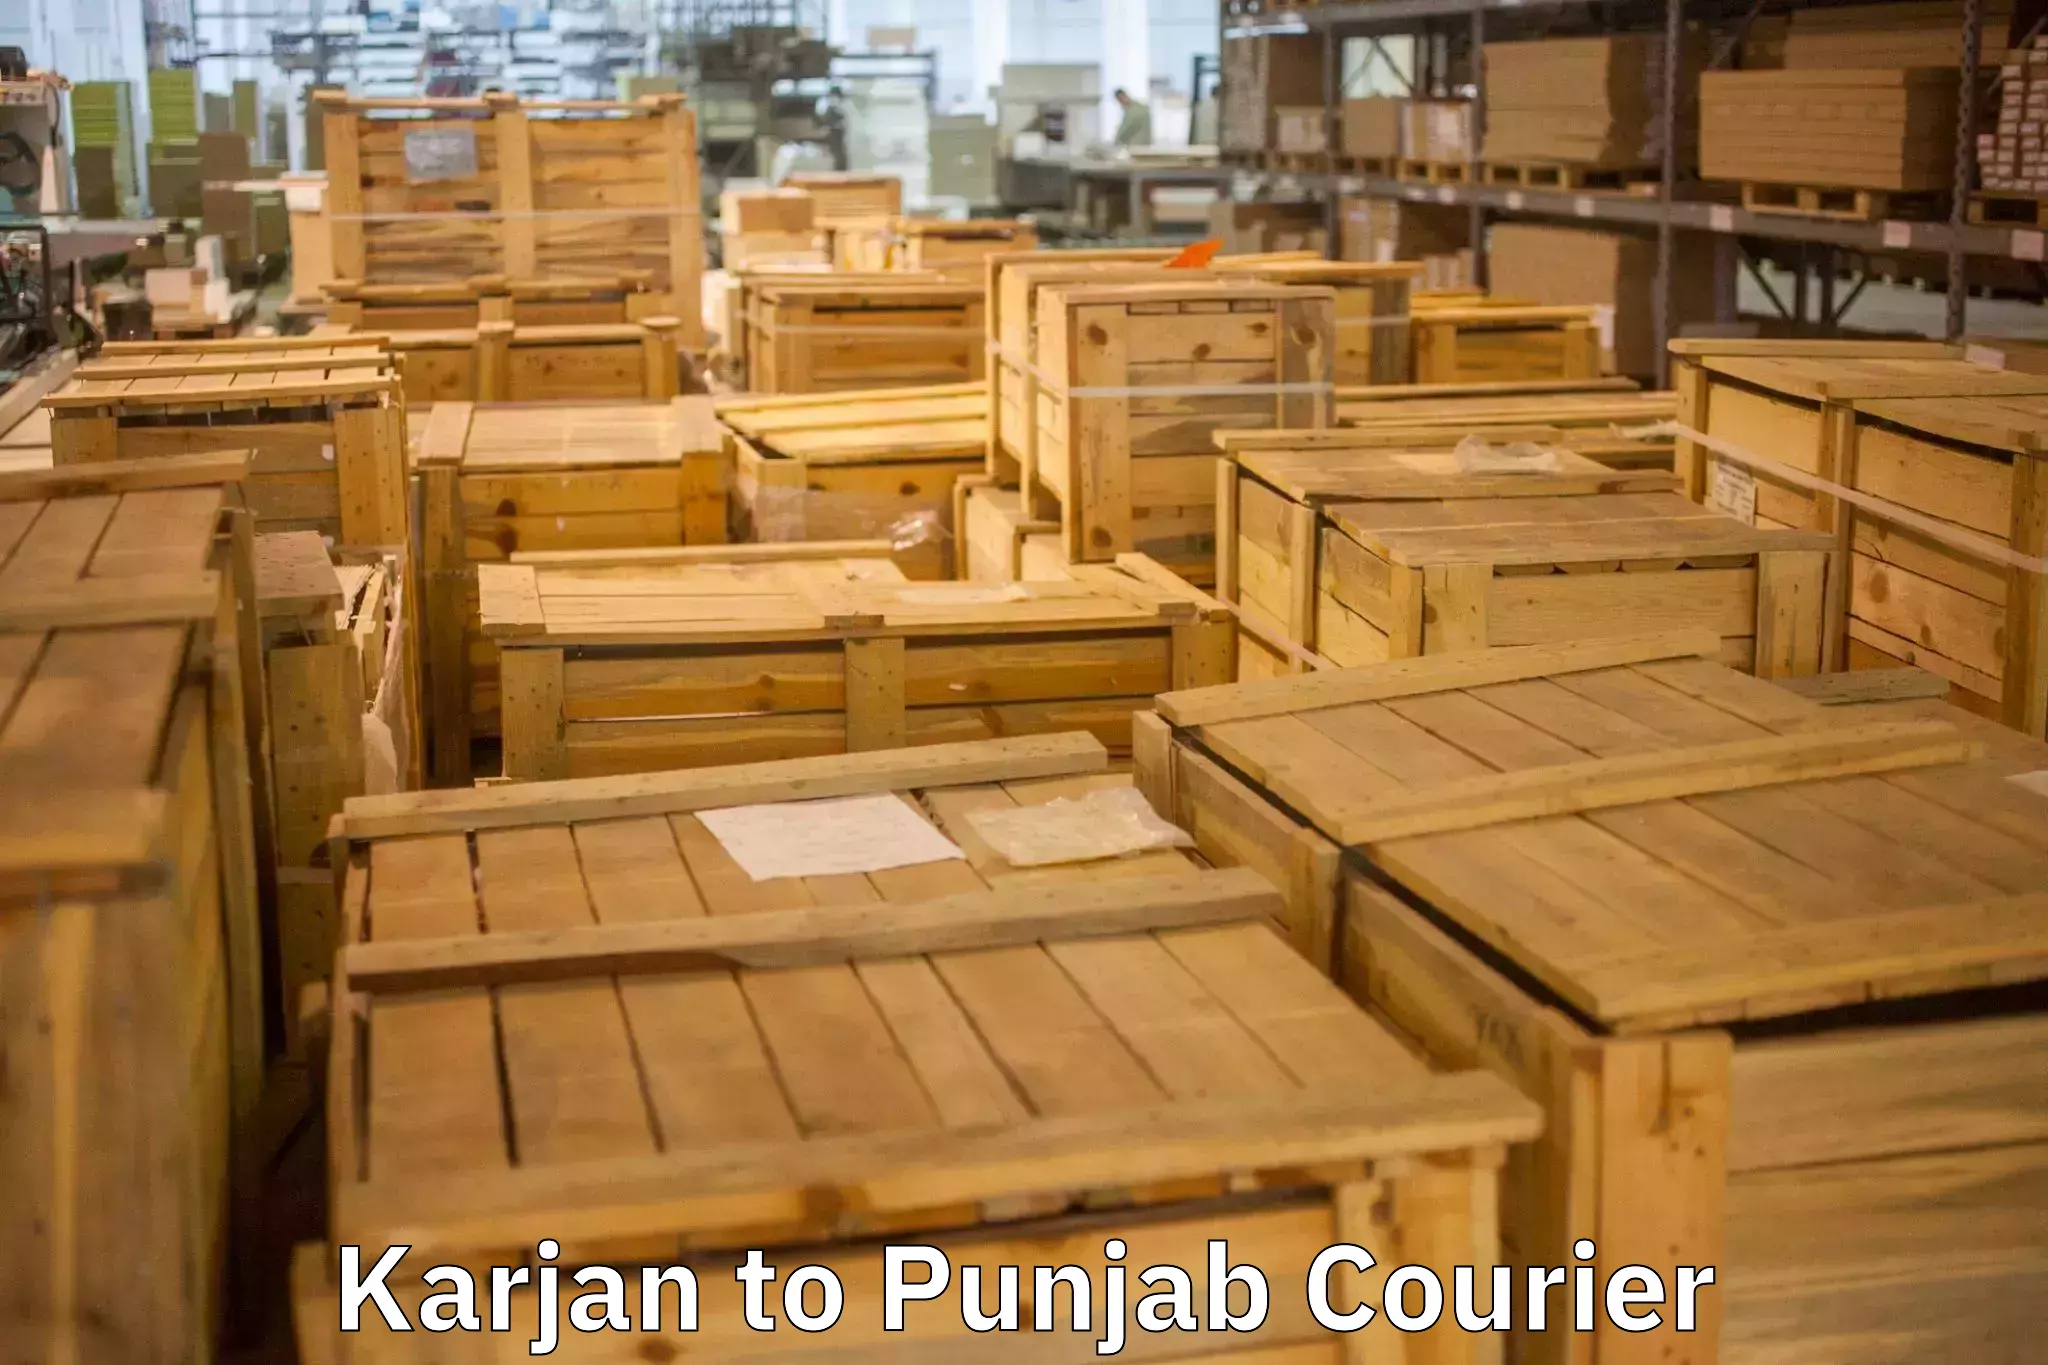 Trusted furniture transport Karjan to Punjab